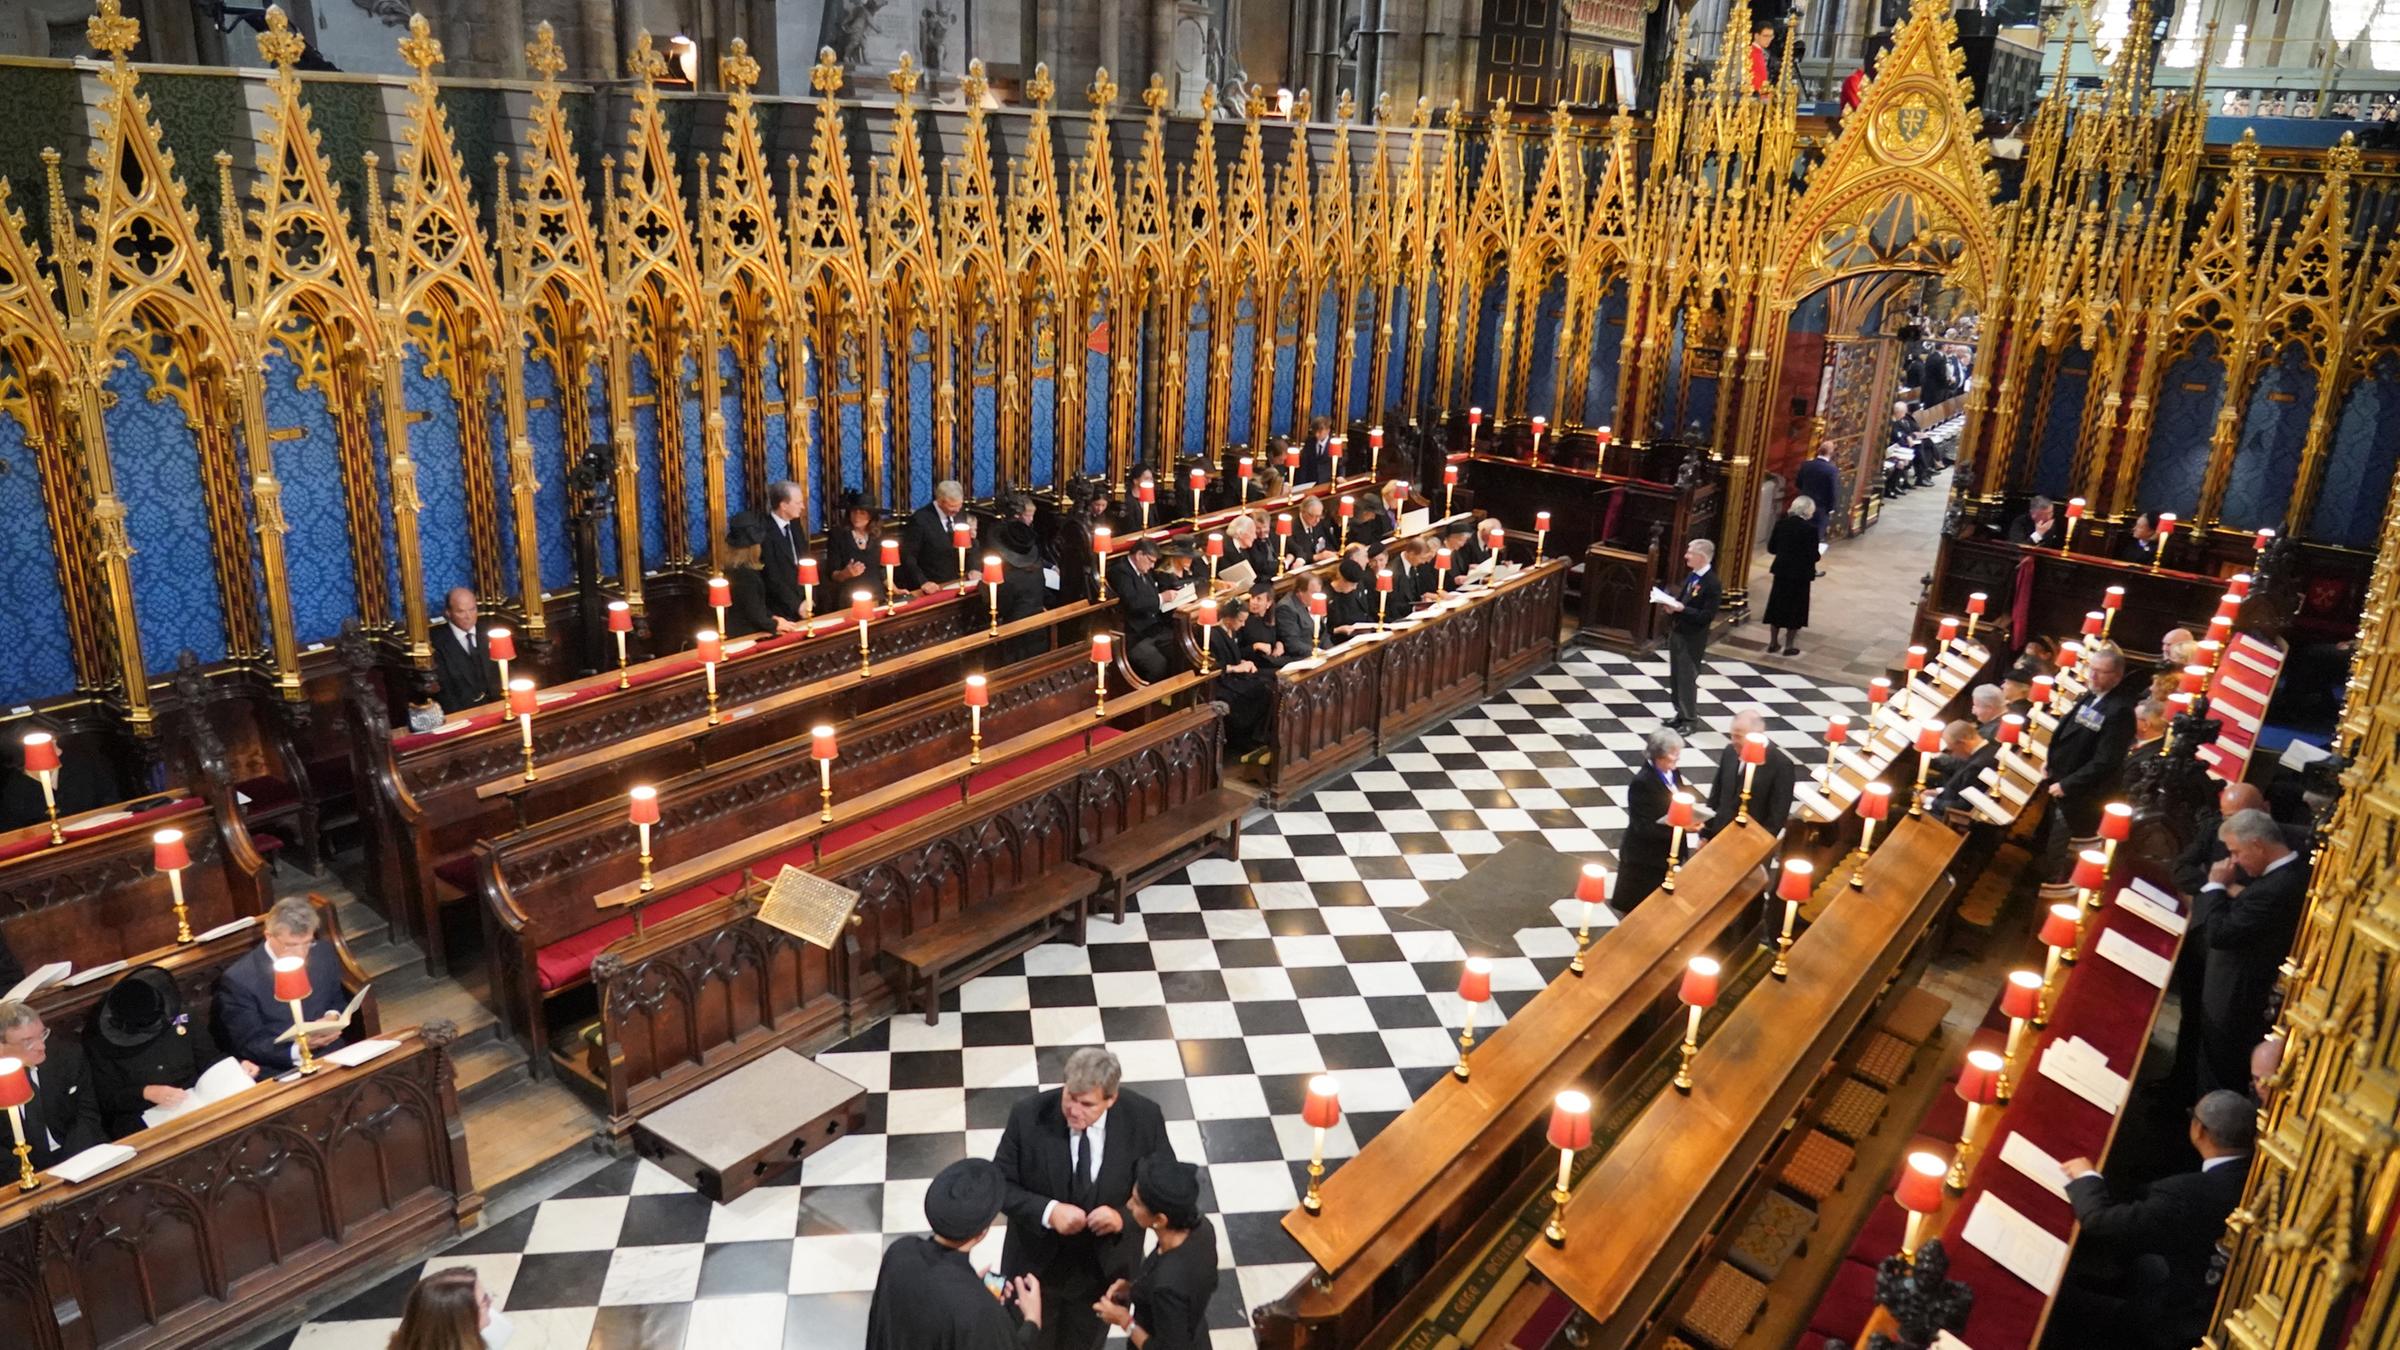 Gäste und Beamte nehmen vor der Trauerfeier für Queen Elizabeth II. in der Westminster Abbey ihre Plätze ein